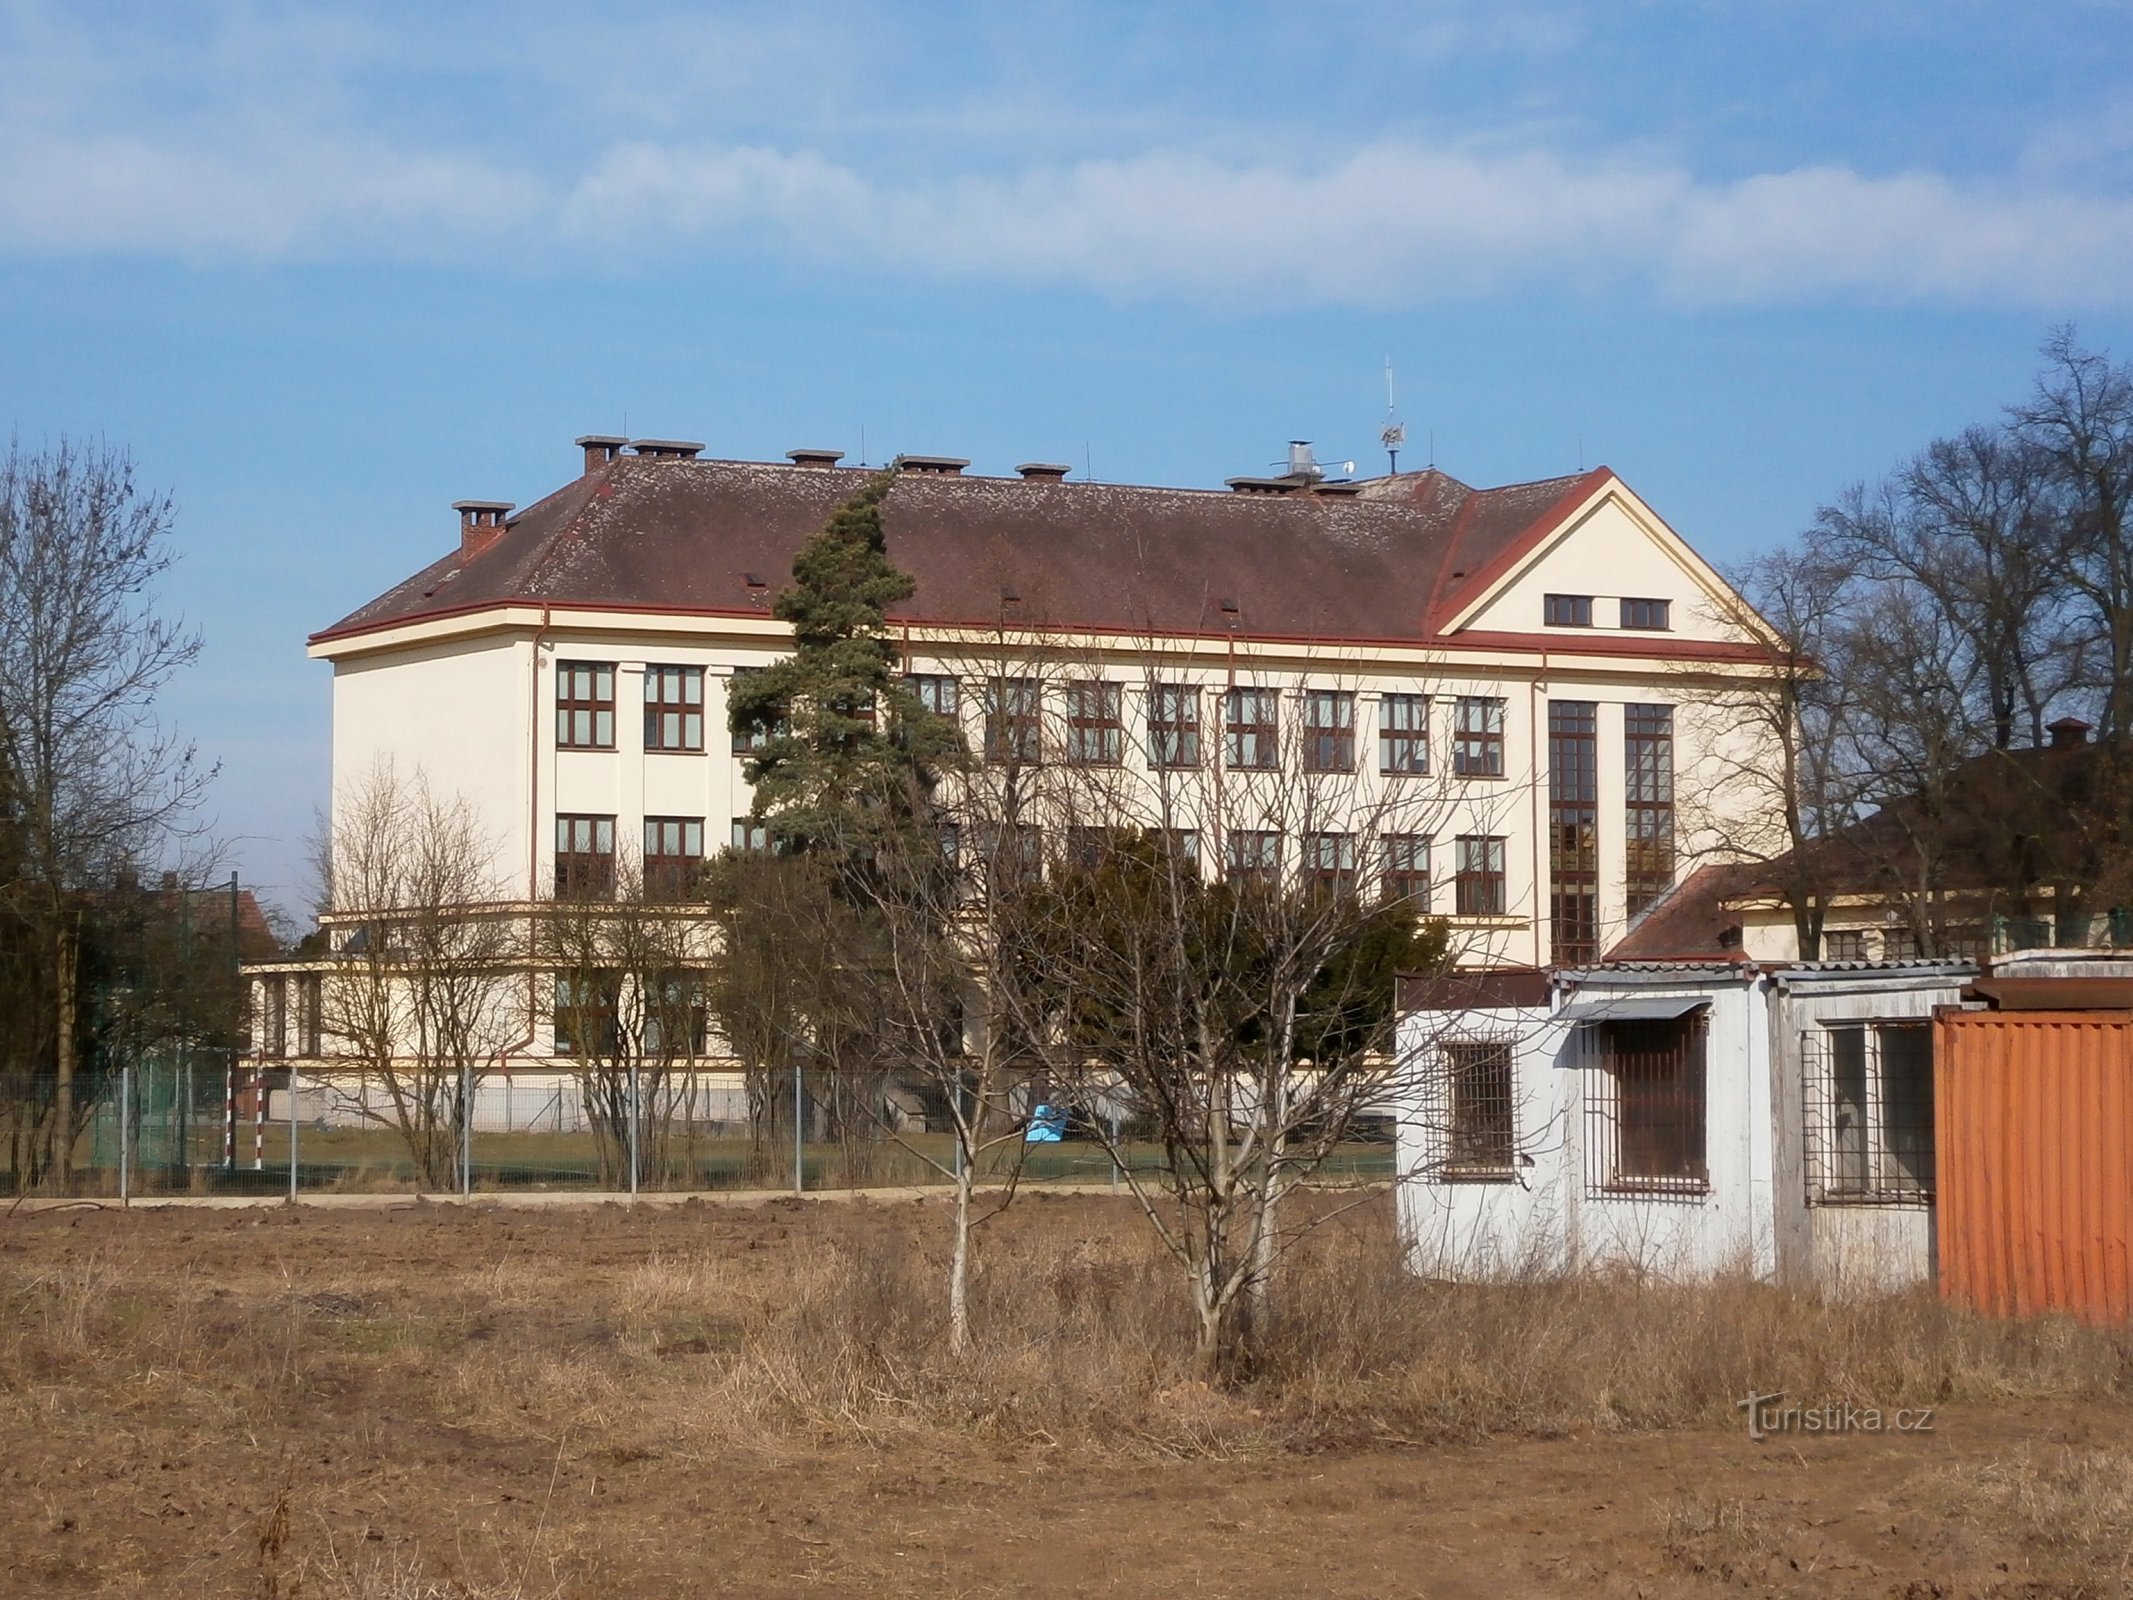 Основная школа им. Масарика в Плотиште-над-Лабем (Градец Кралове, 9.3.2015)